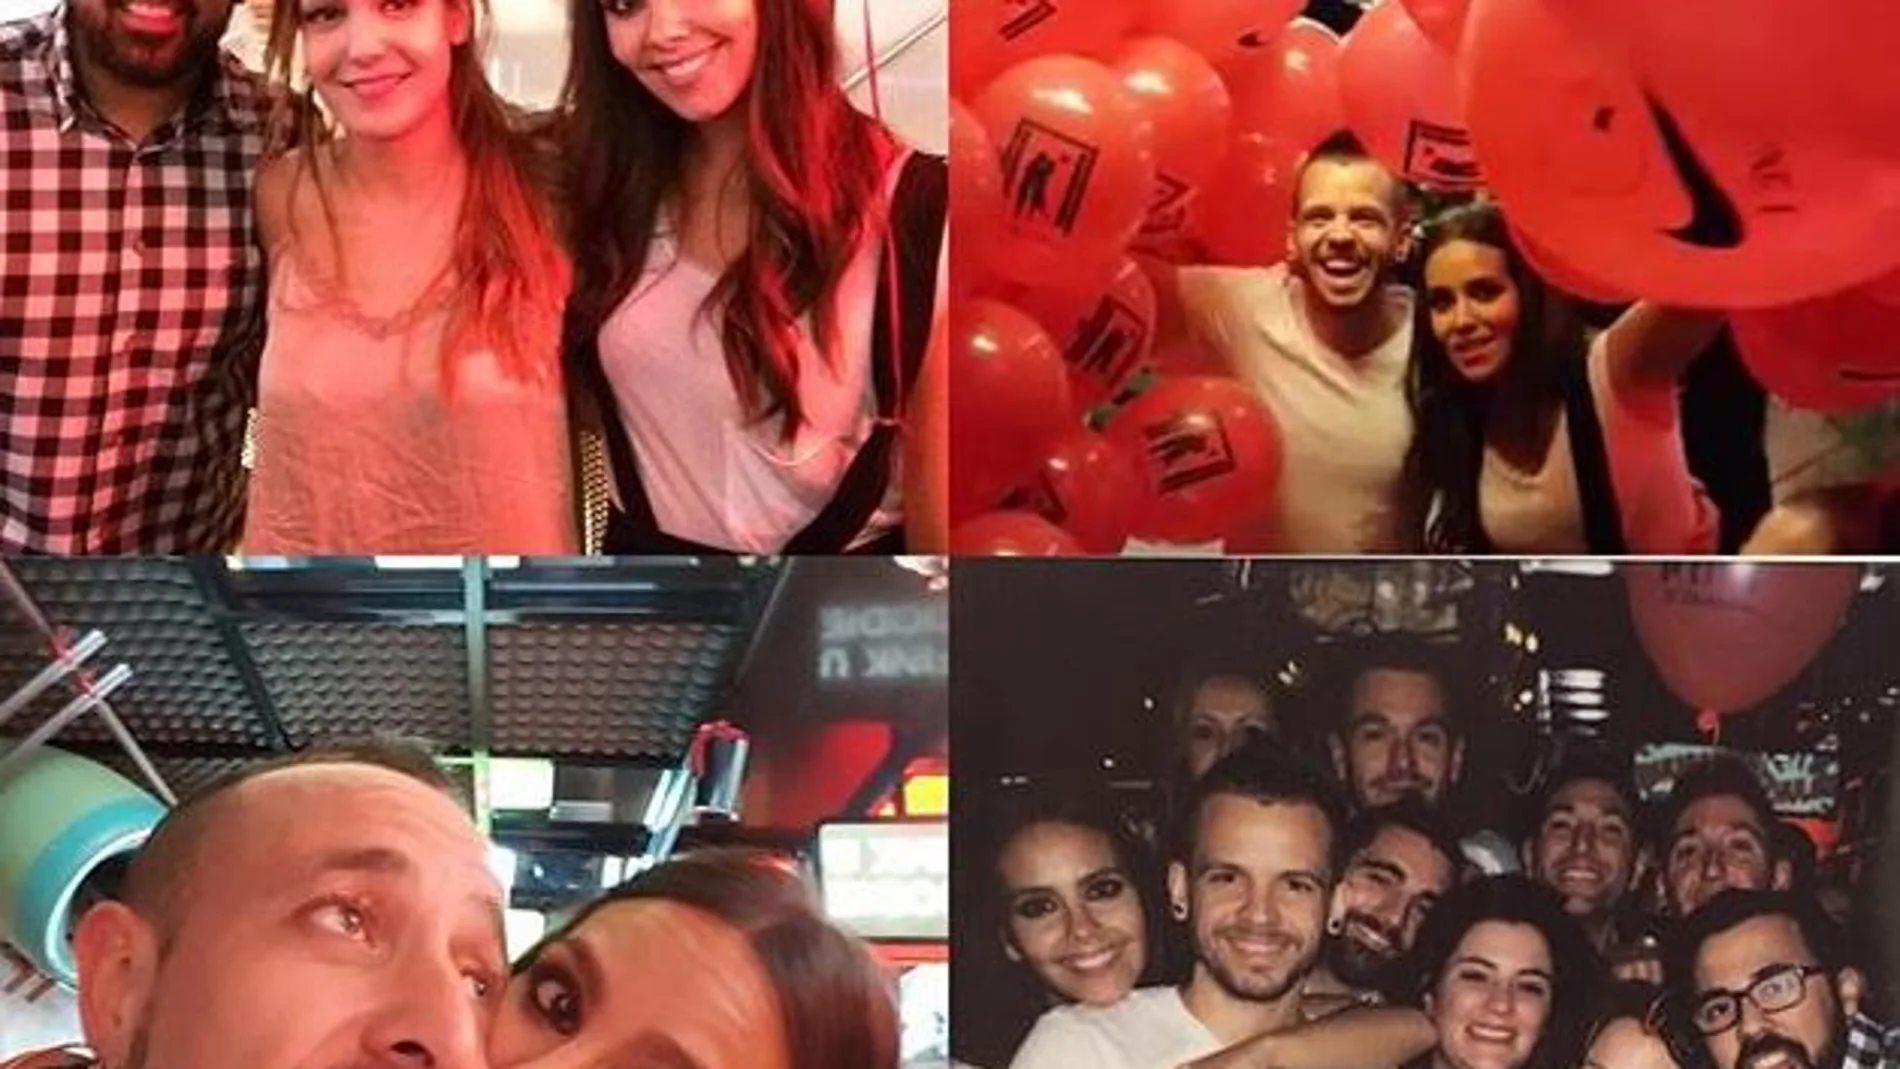 Cristina ha colgado fotos de la fiesta en las redes sociales